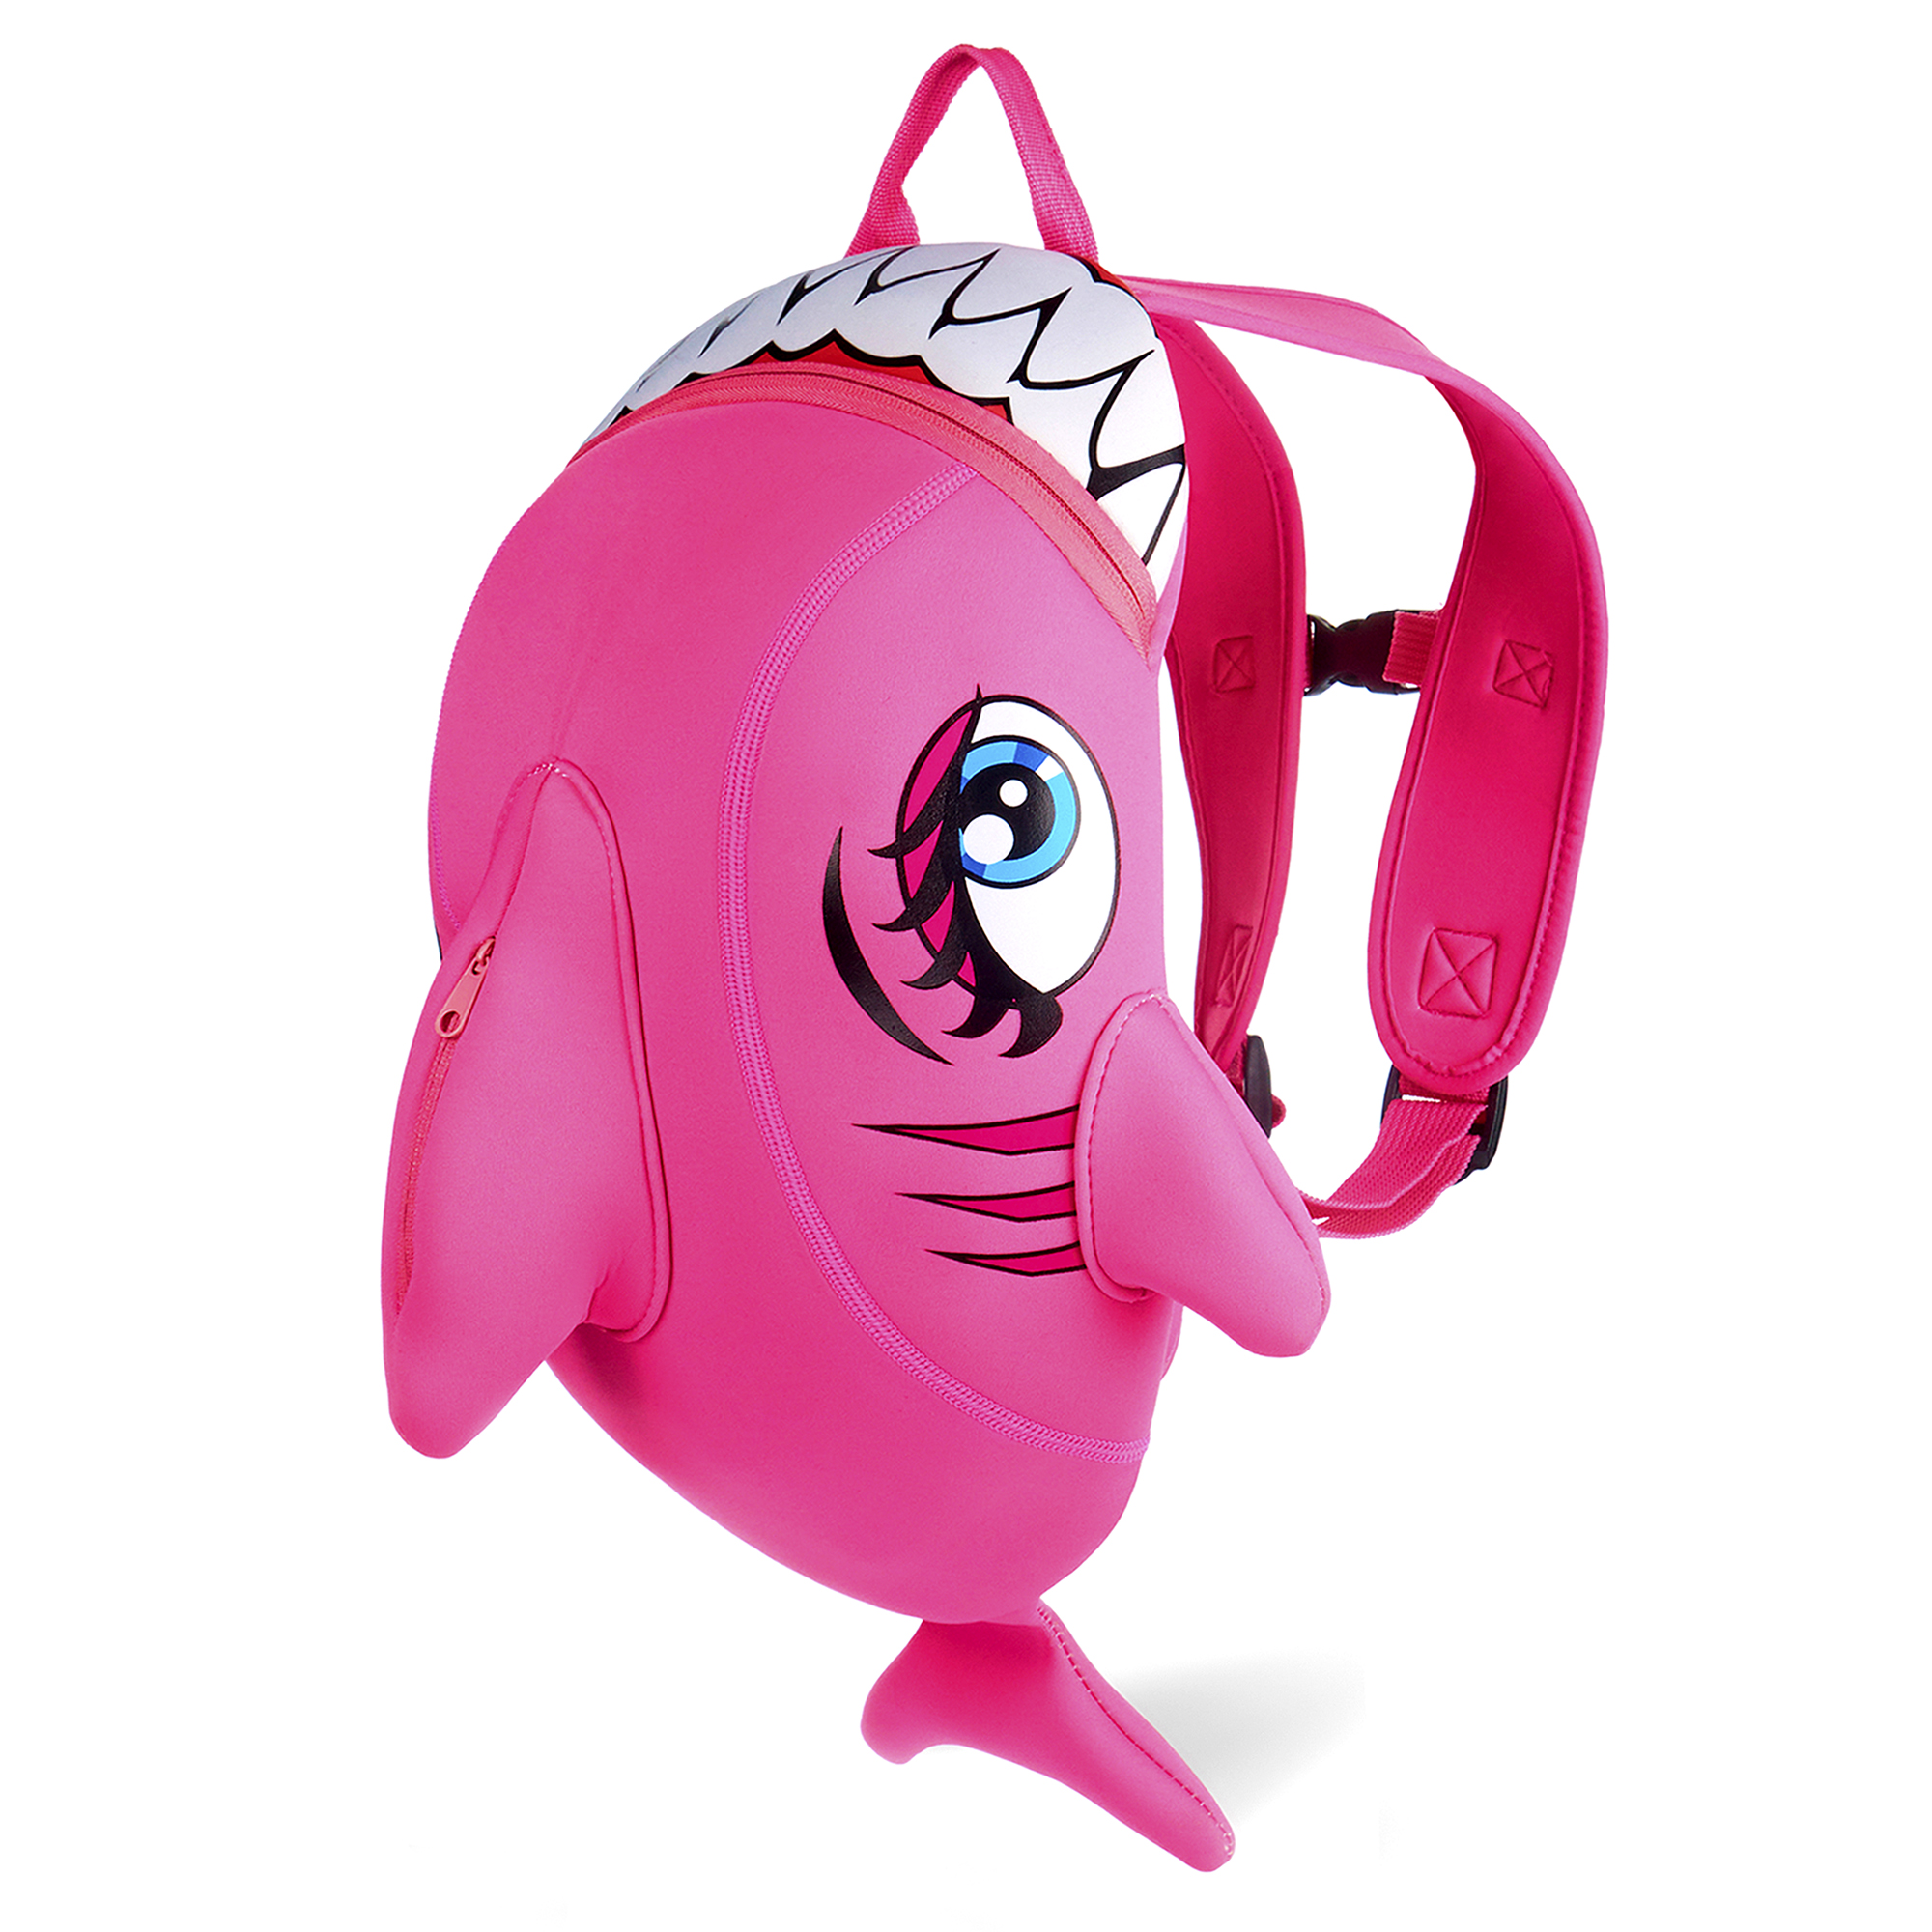 Crazy Safety pink haj rygsæk til børn  Slidstærk neoprentaske med mange funktioner. Testet og godkendt til børn